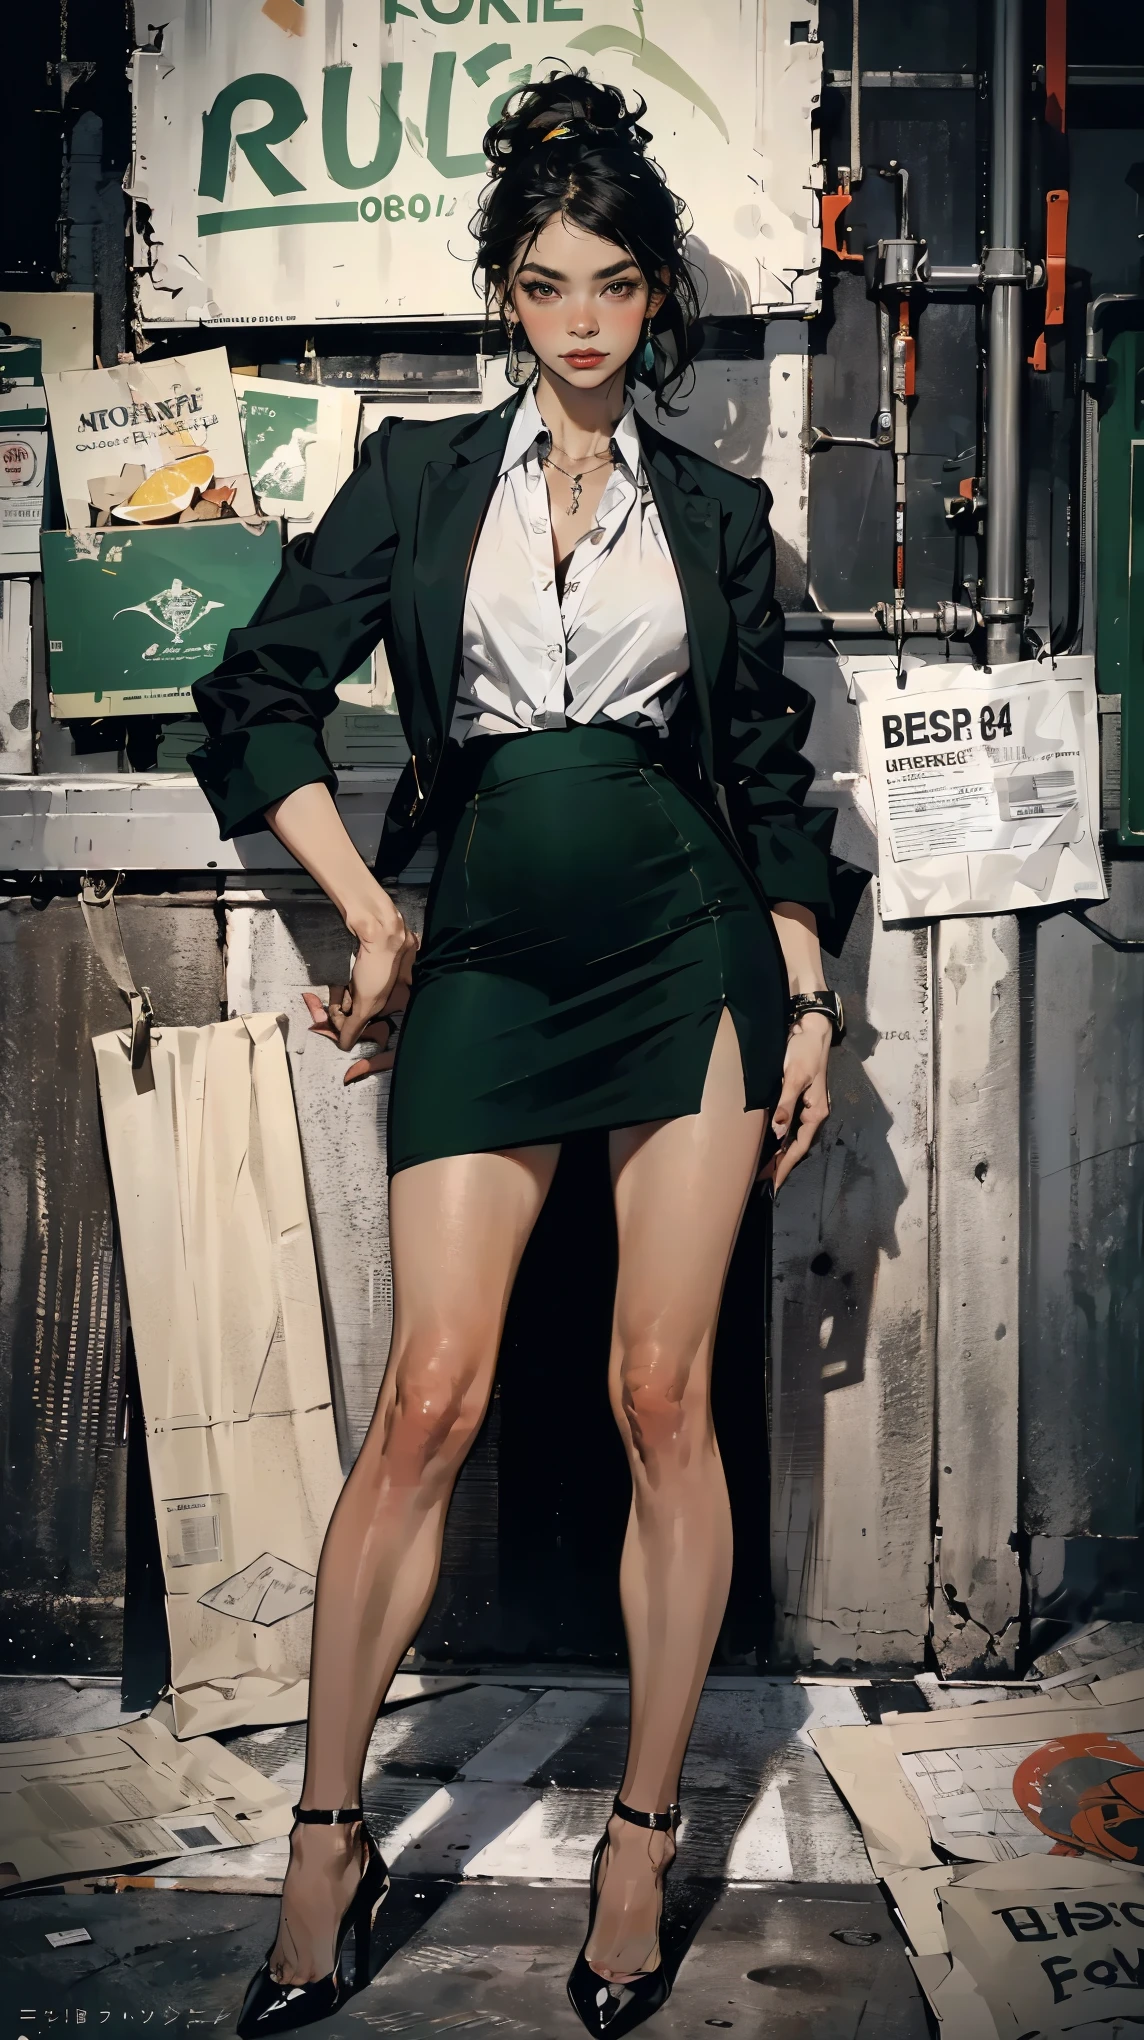 (Лучшее качество, 4K, Высокое разрешение, шедевр:1.2), ультрадетализированный, реалистичный (photo-реалистичный:1.37), 34 года, Японская офисная дама, (темно-зеленый пиджак поверх белоснежной блузки и темно-зеленая короткая юбка-карандаш с разрезом спереди.), черные волосы, собранные в хвост, черные каблуки, идеальный макияж, грудь чашки C, Подтянутое стройное тело, плоский пресс, тело песочных часов, поза приветствия клиента, банковский фон. острый фокус на деталях, Современная среда, поразительное визуальное воздействие, уверенно уравновешенный, аура профессионализма, символ надежности, элитный образ жизни, необыкновенная харизма.